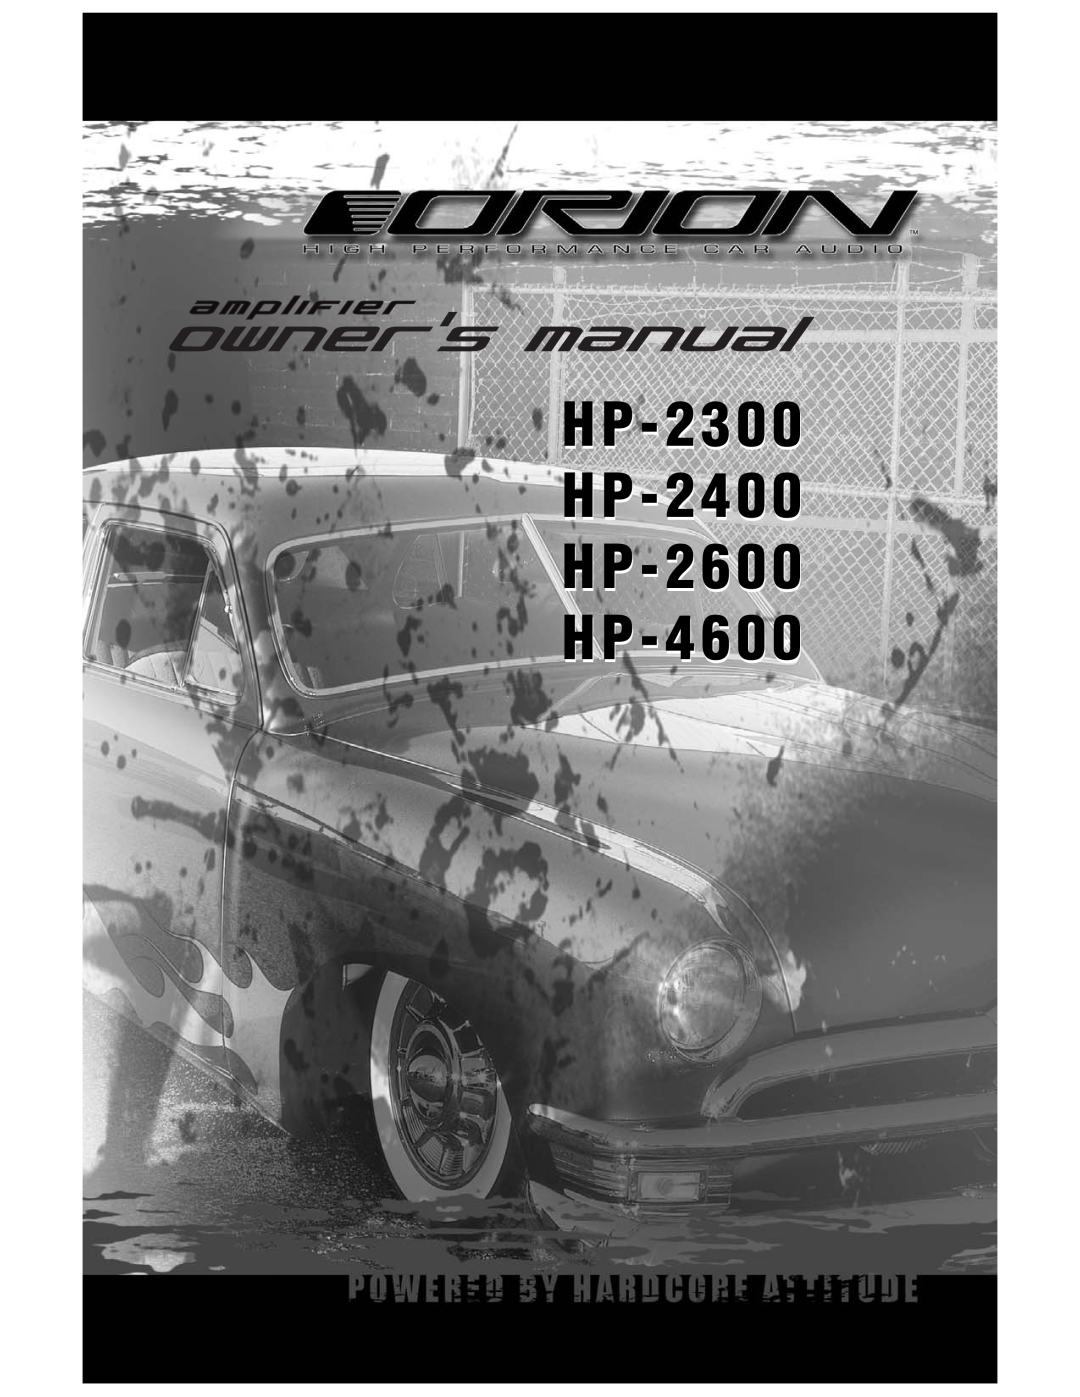 Orion Car Audio manual HP-2300 HP-2400 HP-2600 HP-4600 